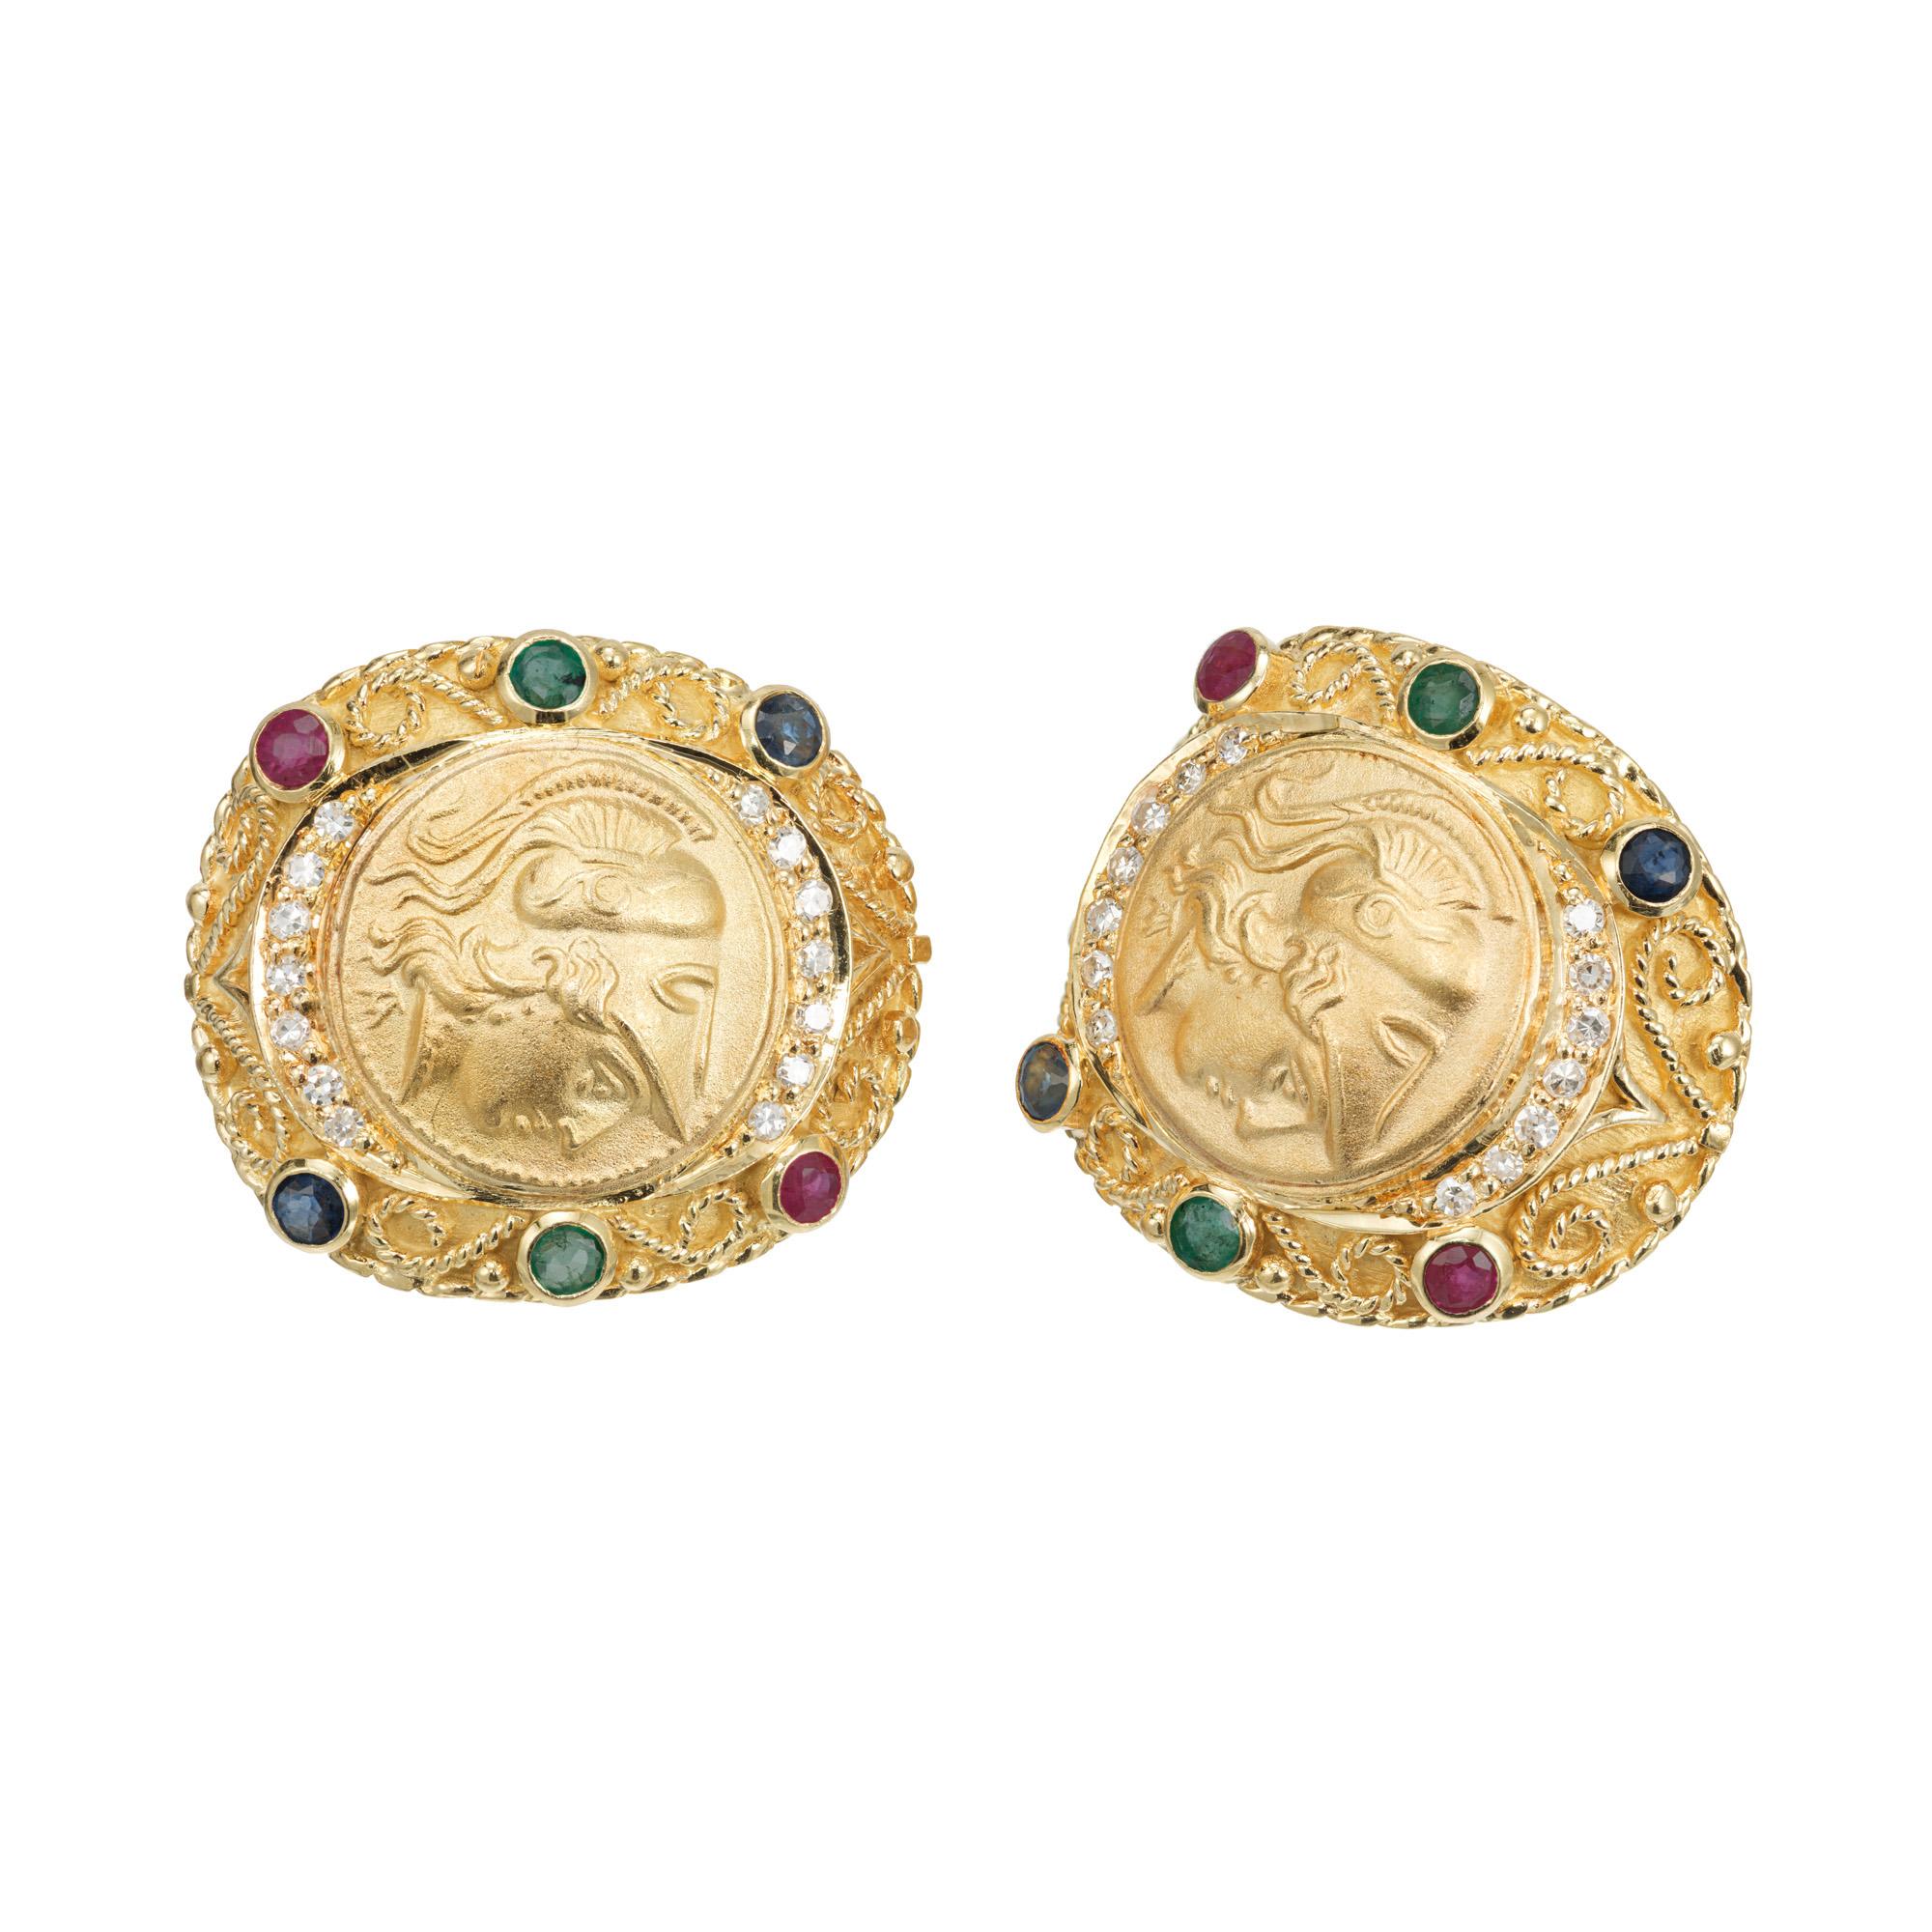 Vintage 1980's Multi-Stein Hebel zurück Ohrringe. Beide dieser byzantinischen Stil 18k Gelbgold Clip Post Ohrringe Ohrringe bestehen 2 Lünette gesetzt runden Rubinen, 2 Lünette gesetzt runden Smaragden und 2 Lünette gesetzt runden Saphiren. Beide